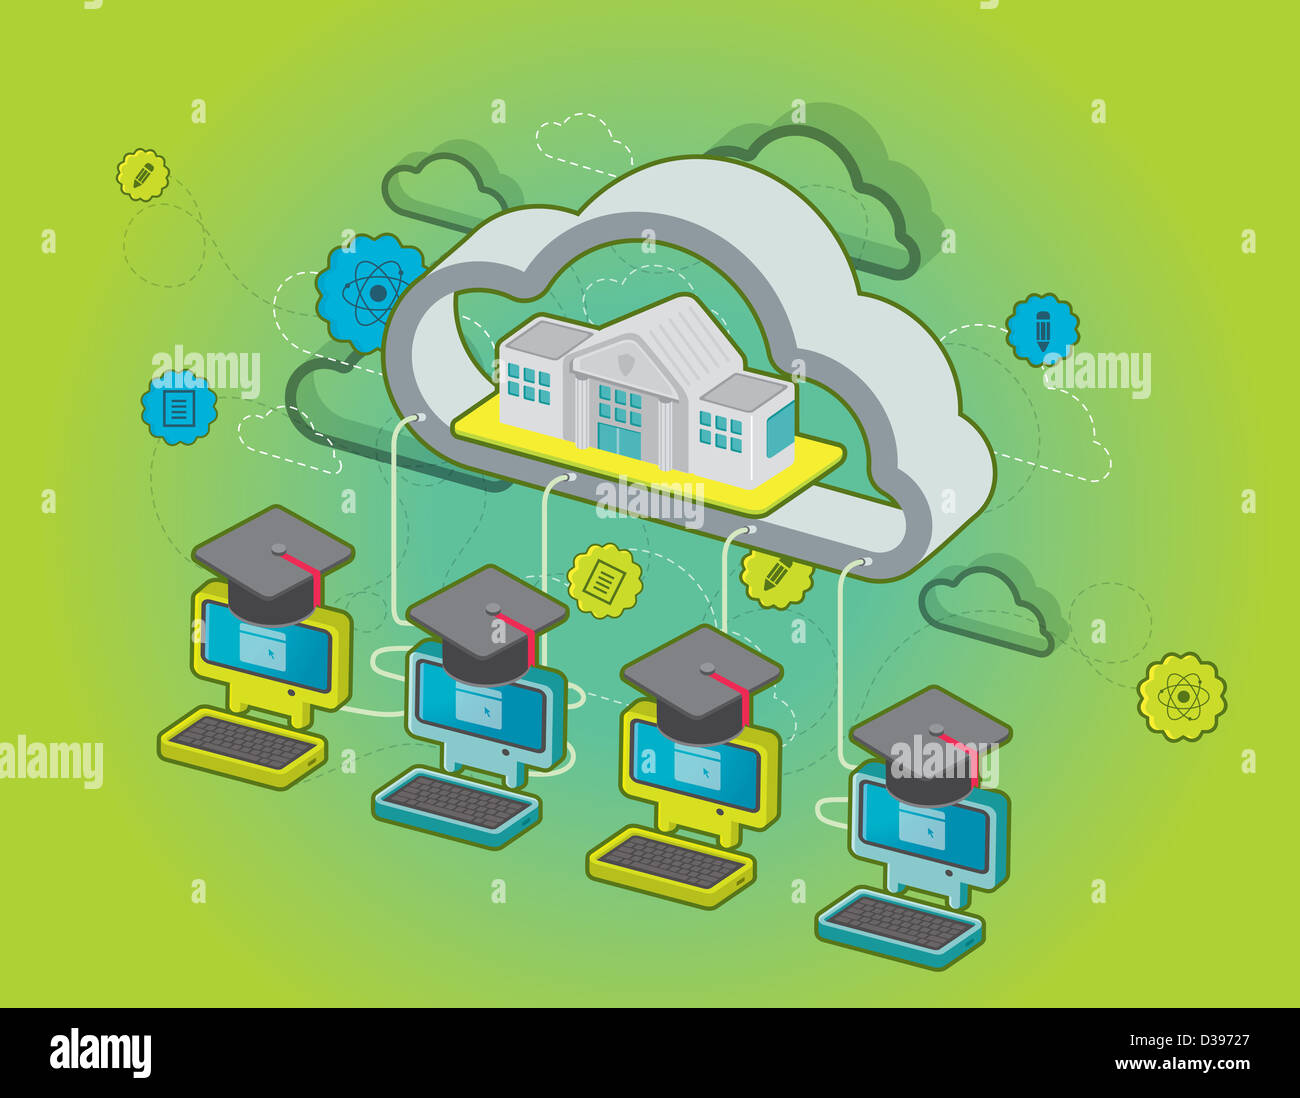 Illustration d'ordinateurs avec graduation caps liés à un bâtiment de l'école illustrant concept de e-learning Banque D'Images